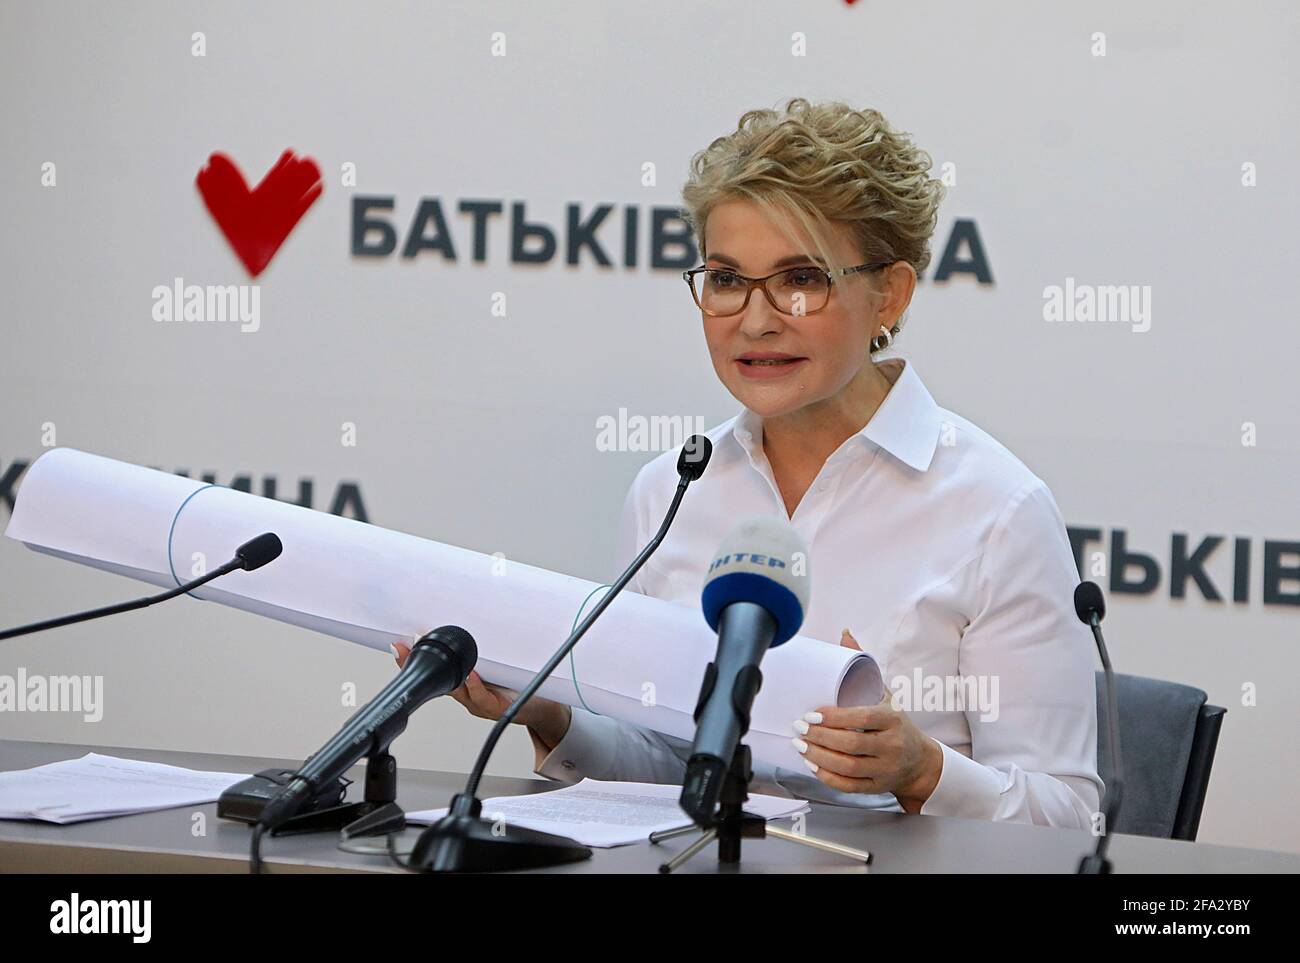 KYIV, UKRAINE - APRIL 22, 2021 - Batkivshchyna leader Yulia Tymoshenko holds a news conference, Kyiv, capital of Ukraine. Stock Photo